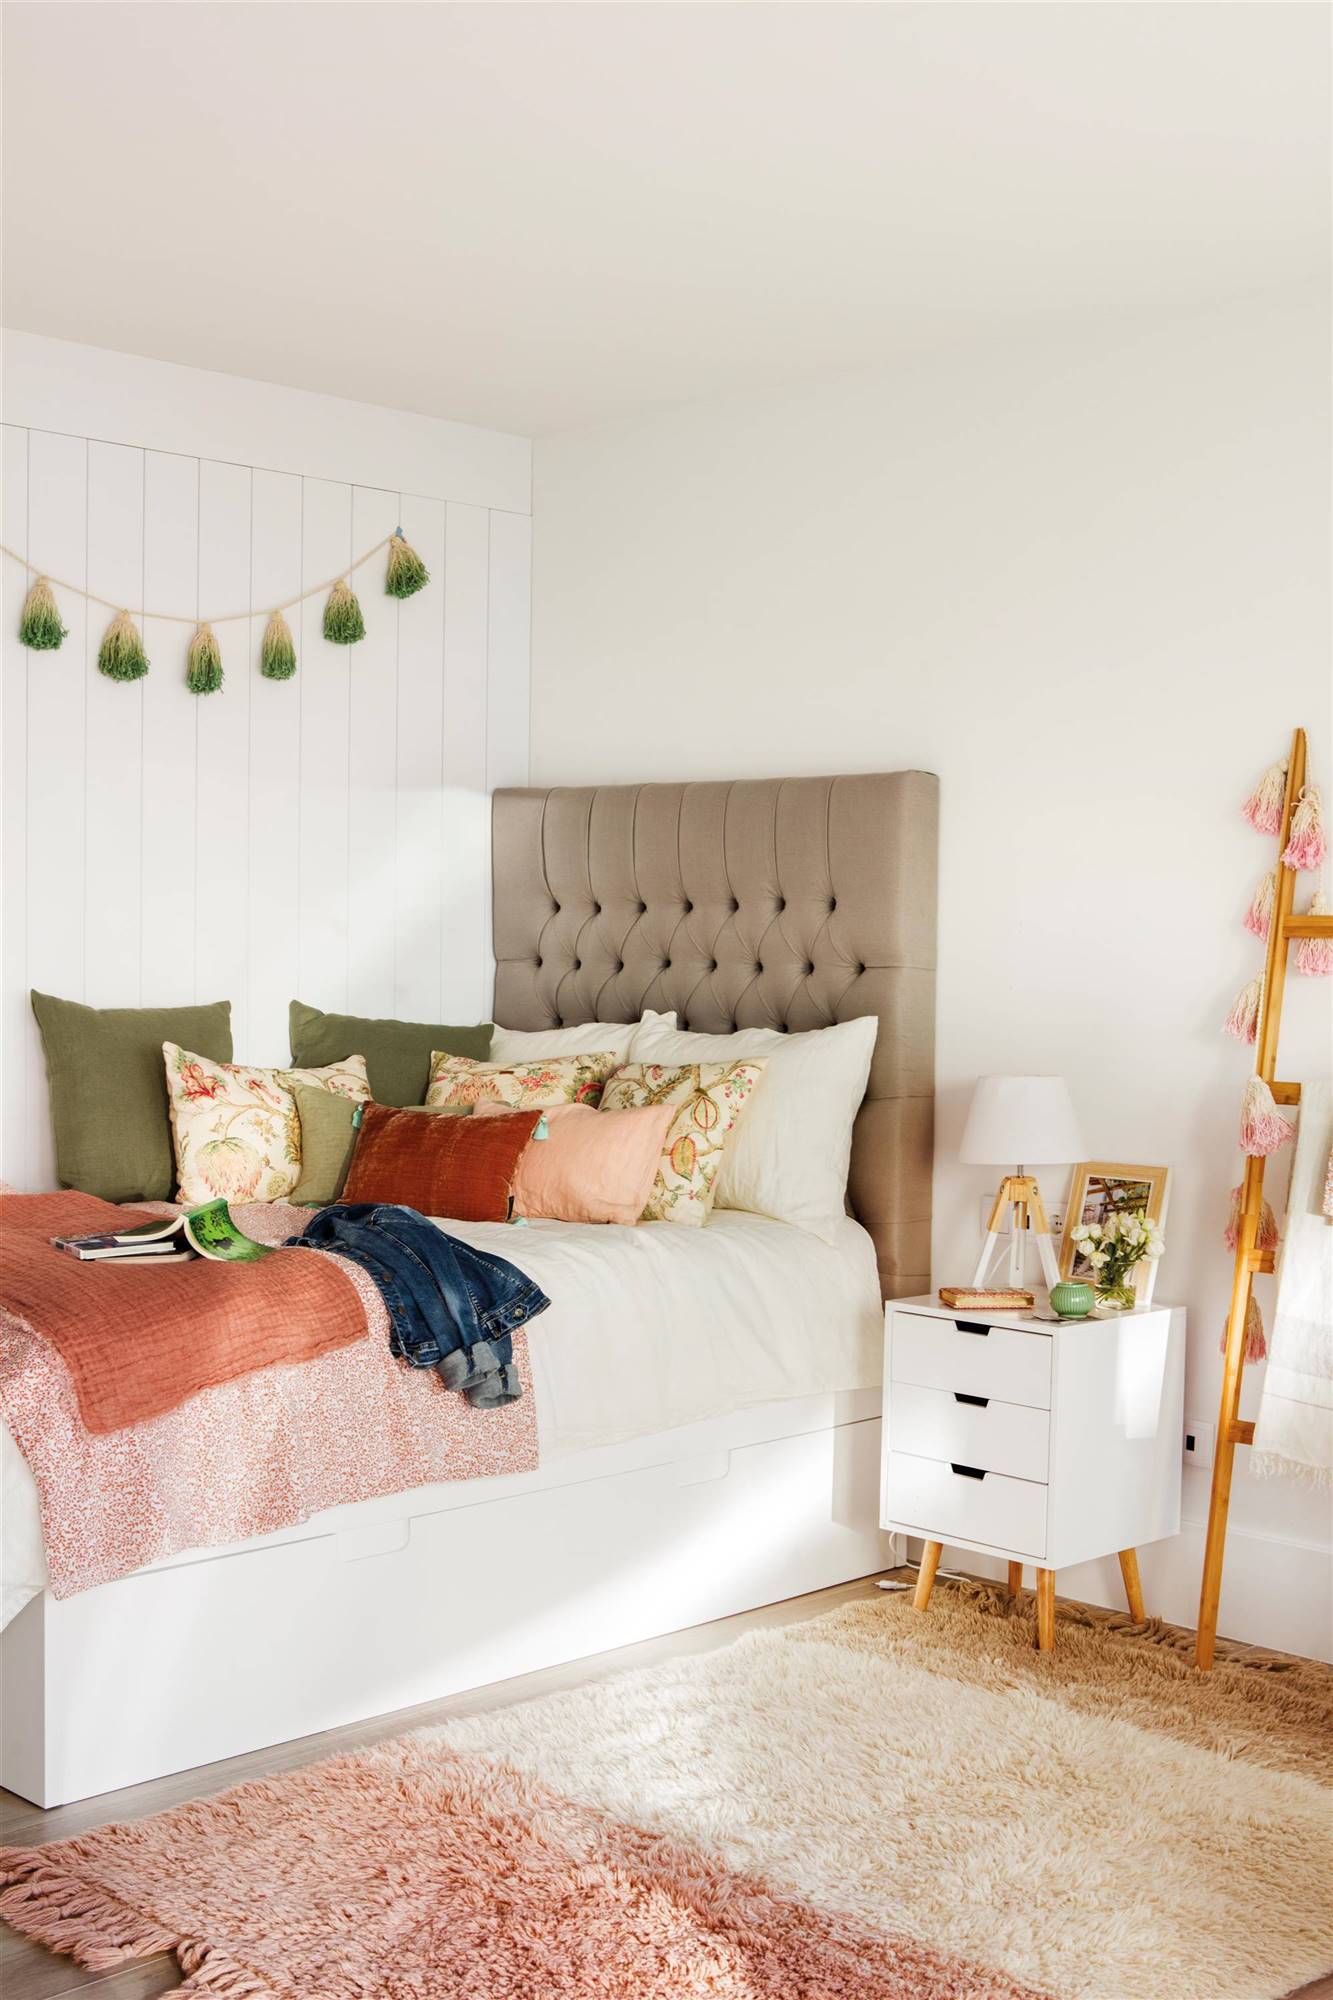 Dormitorio infantil con alfombra, cama nido, cabecero de capitoné y cojines.